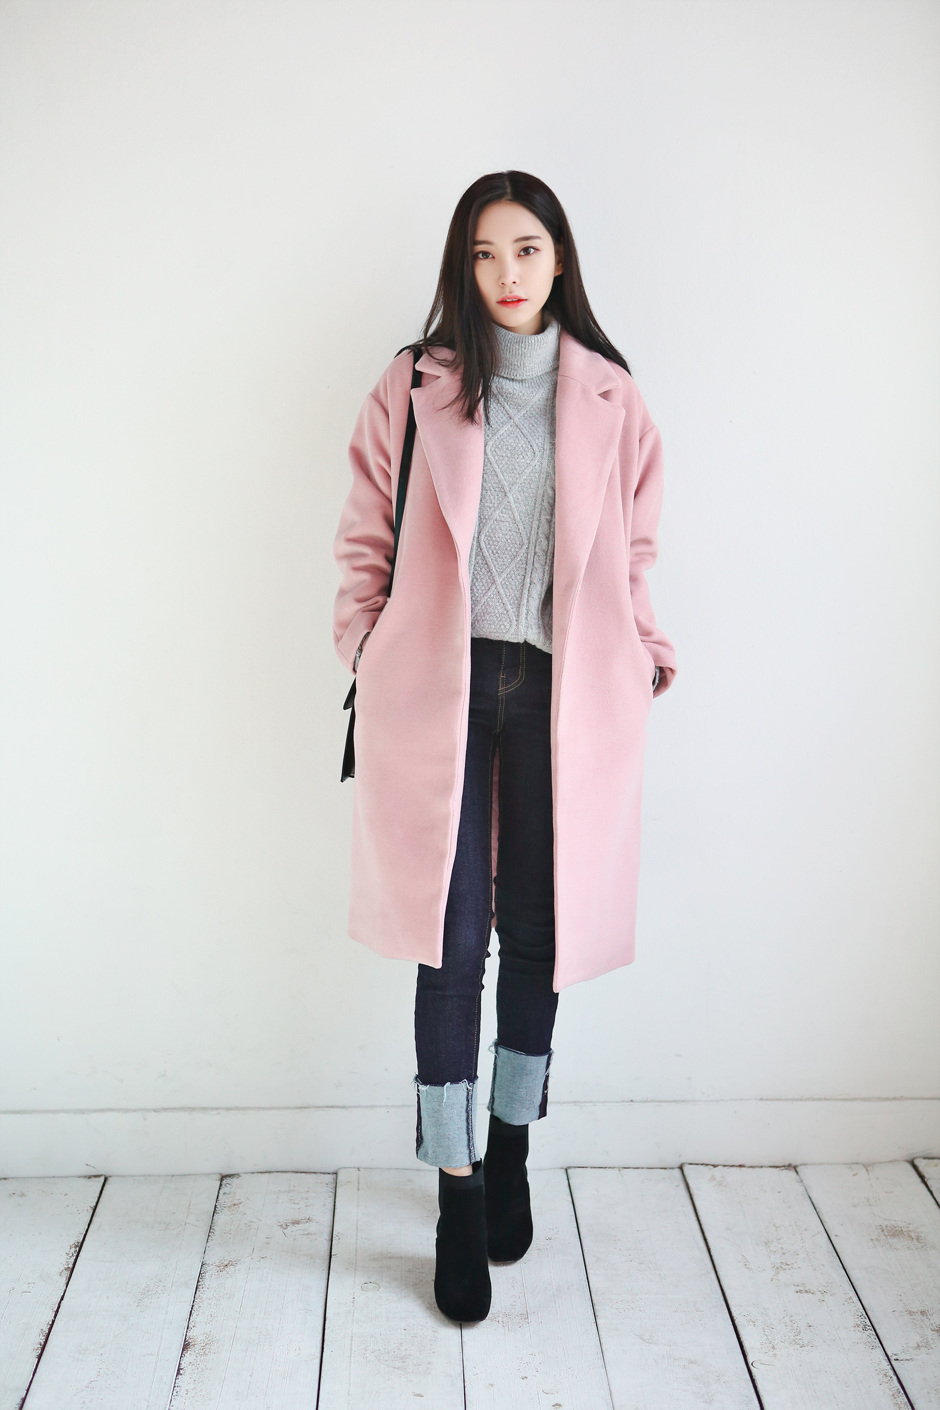 2017流行大衣款式盘点 最新时尚韩版女装穿搭